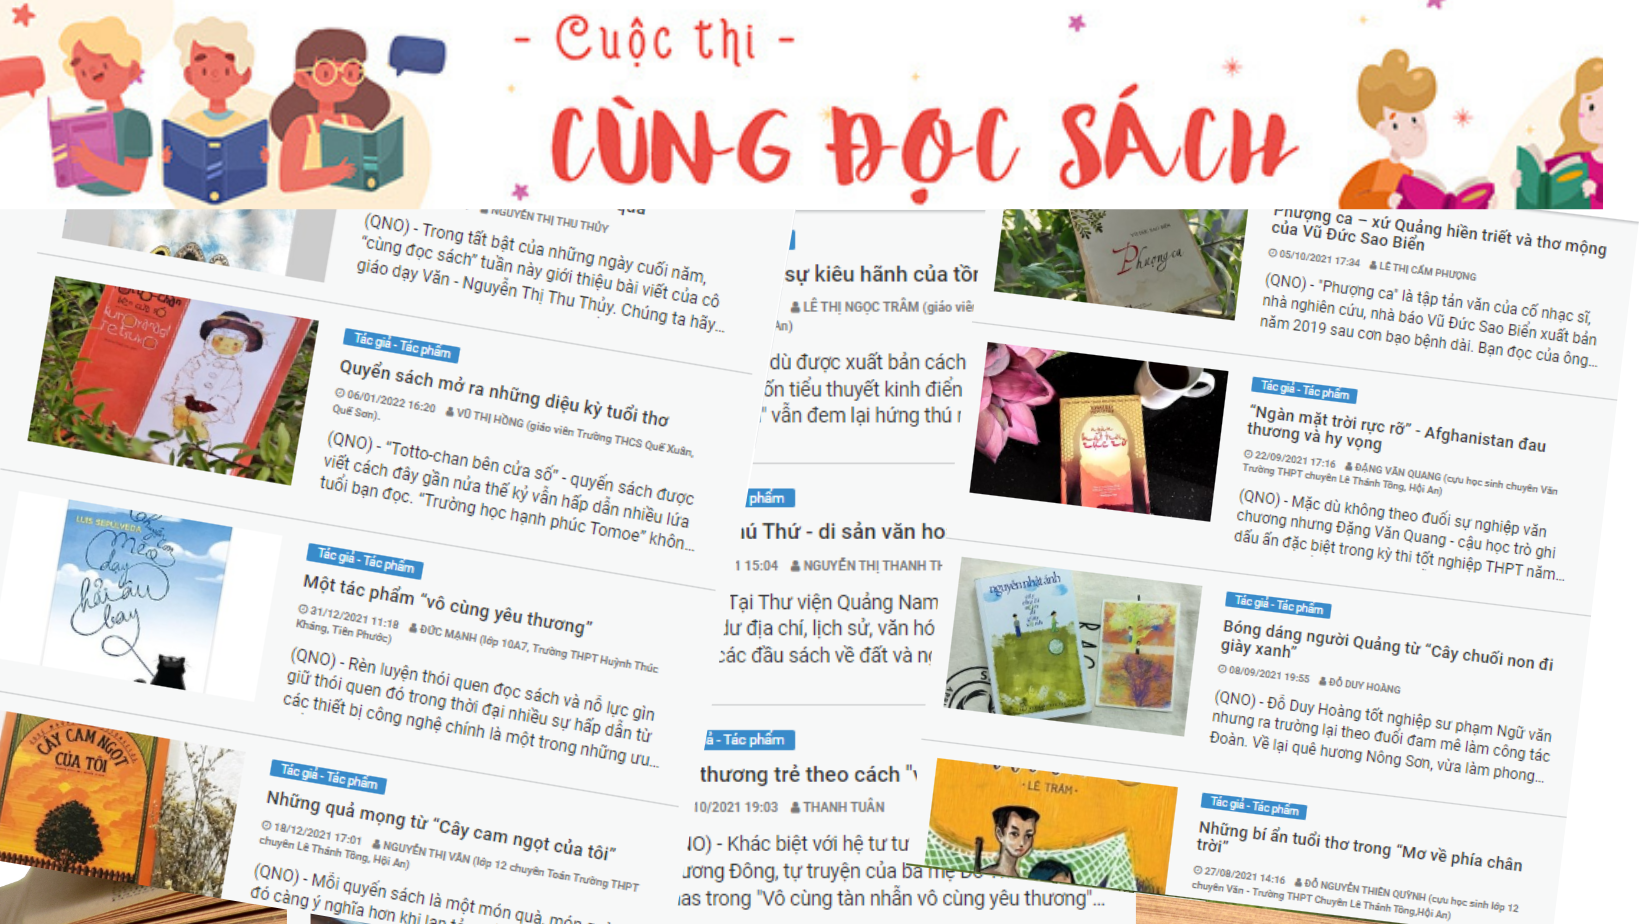 Tác phẩm tham gia cuộc thi “Cùng đọc sách” đăng tải trên báo Quảng Nam điện tử. Ảnh: C.N